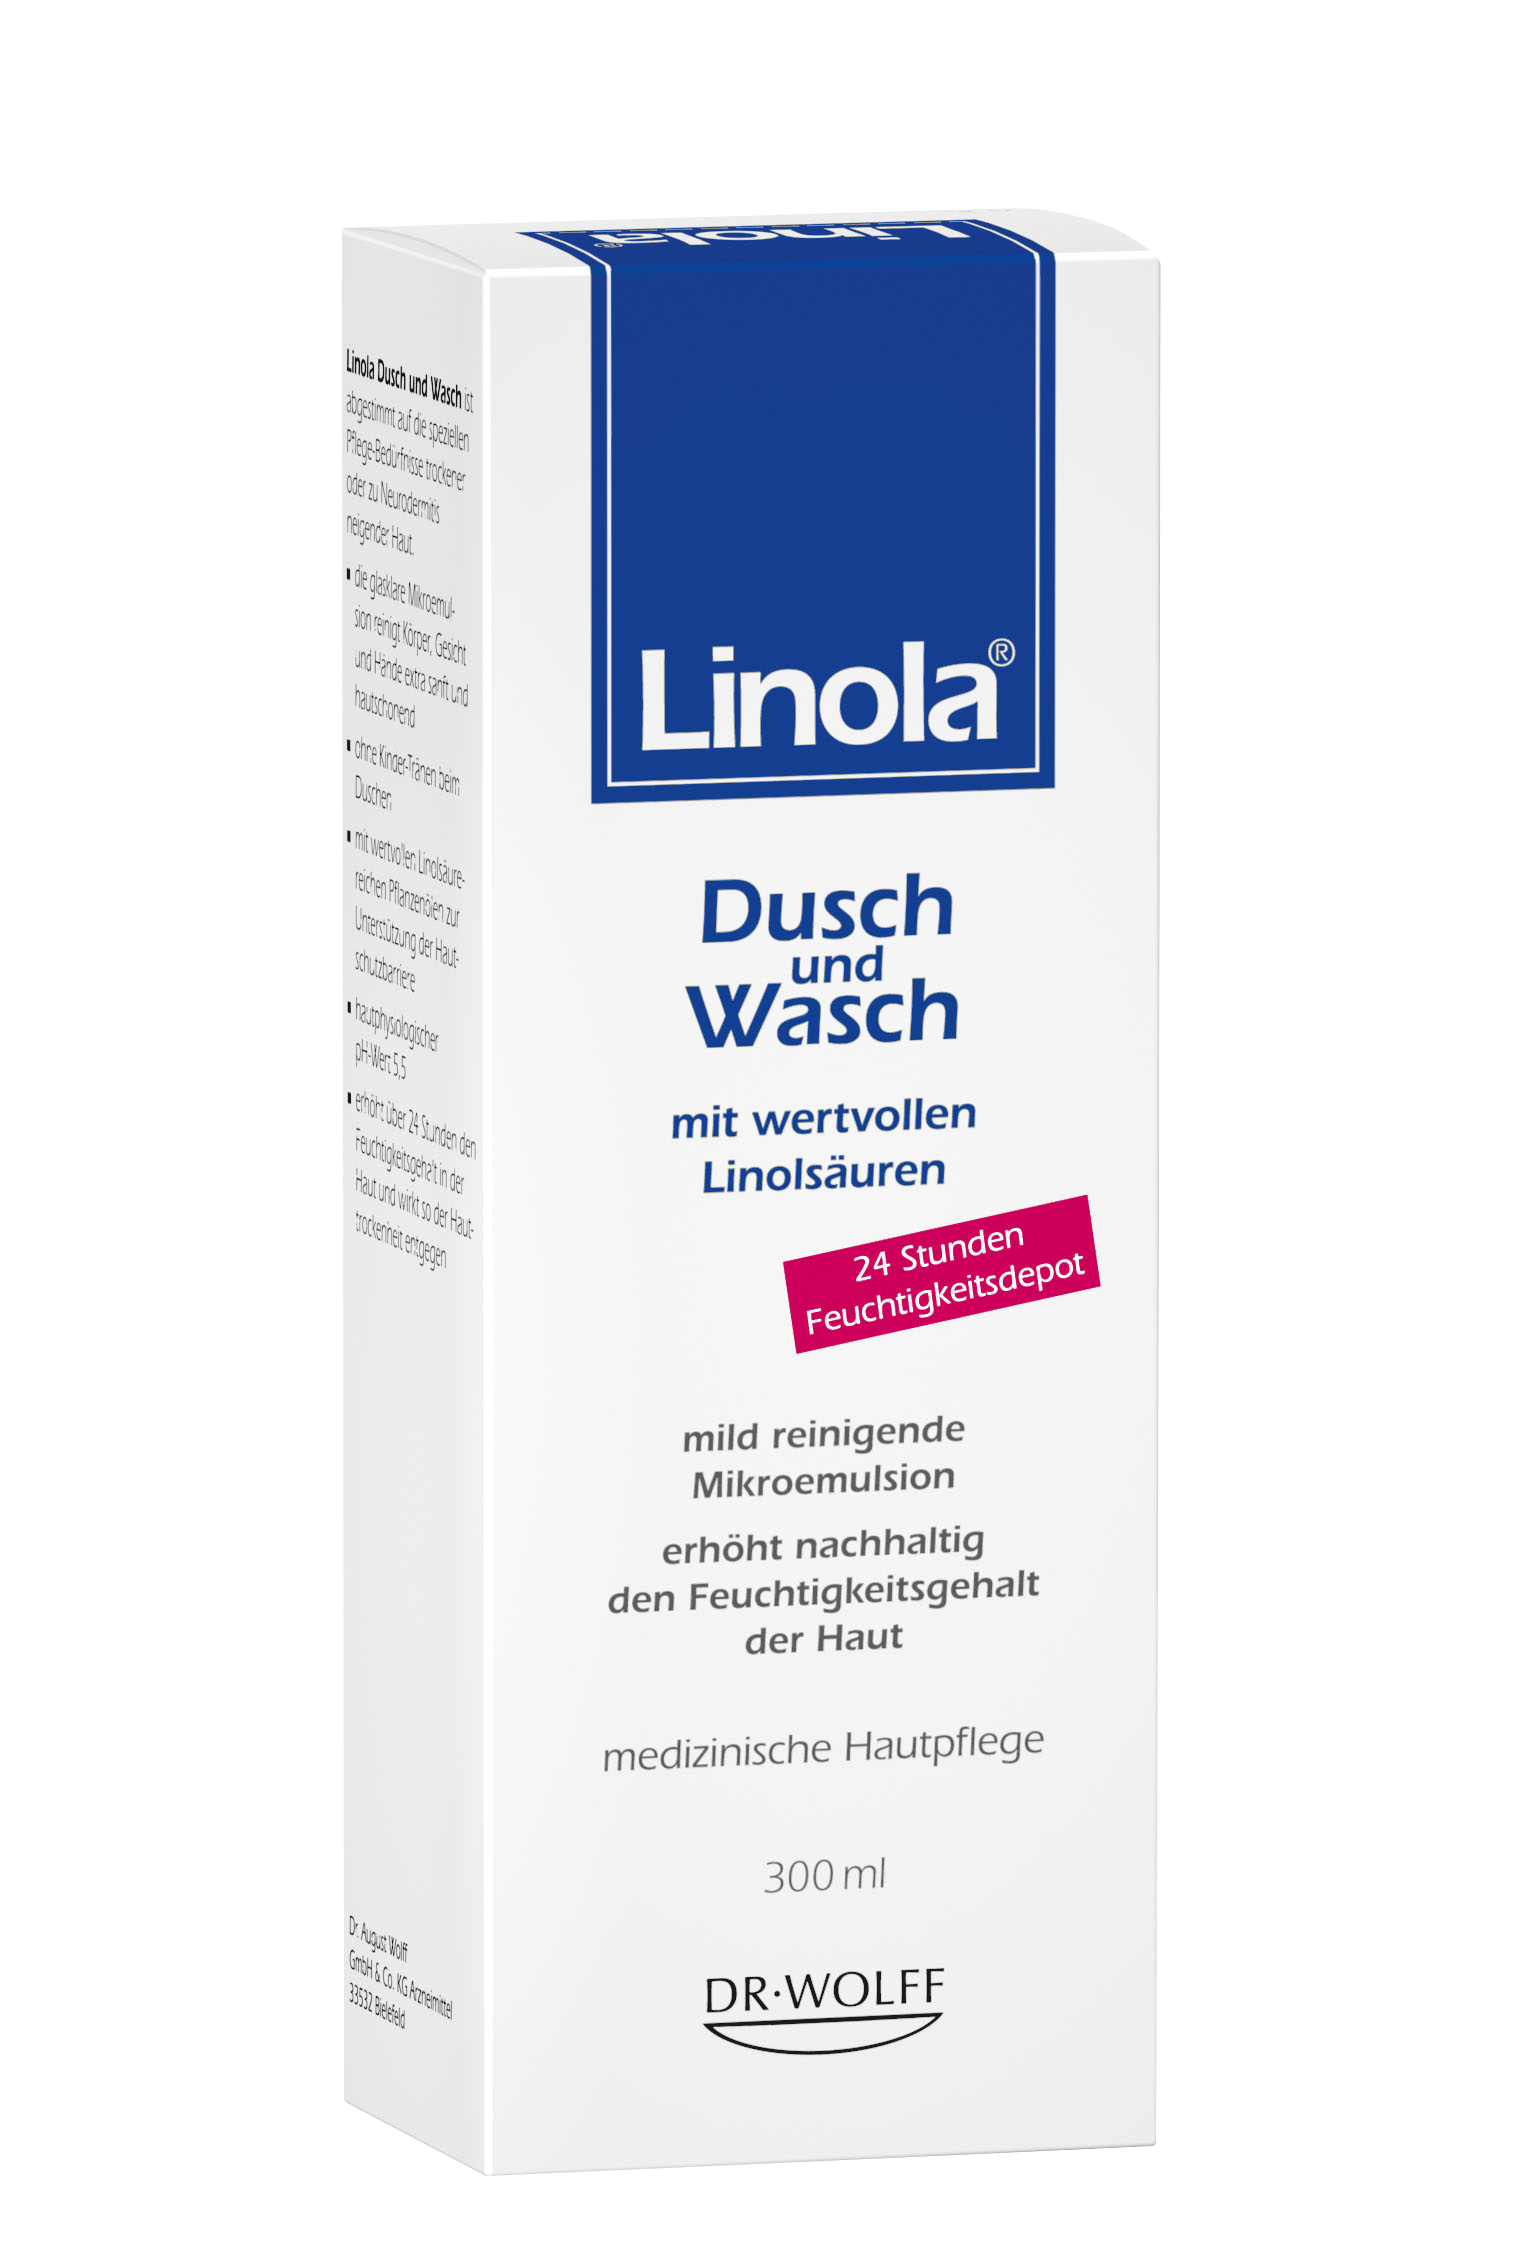 LINOLA® Dusch & Wasch 300ml